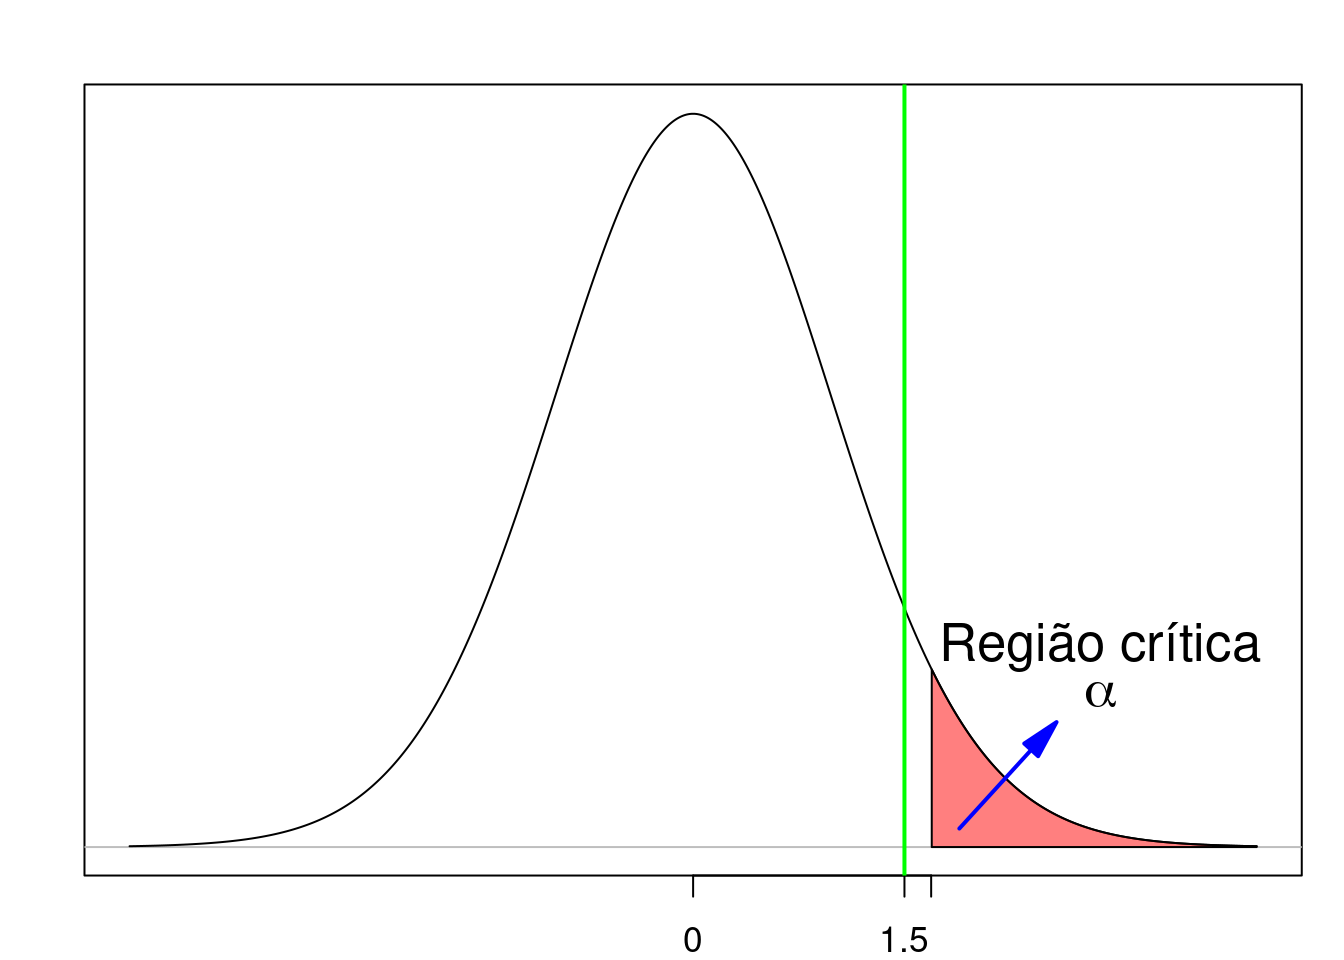 Exemplo de teste unilateral onde não ocorre a rejeição da hipótese nula. A linha verde indica o valor da estatística t calculada a partir da amostra.